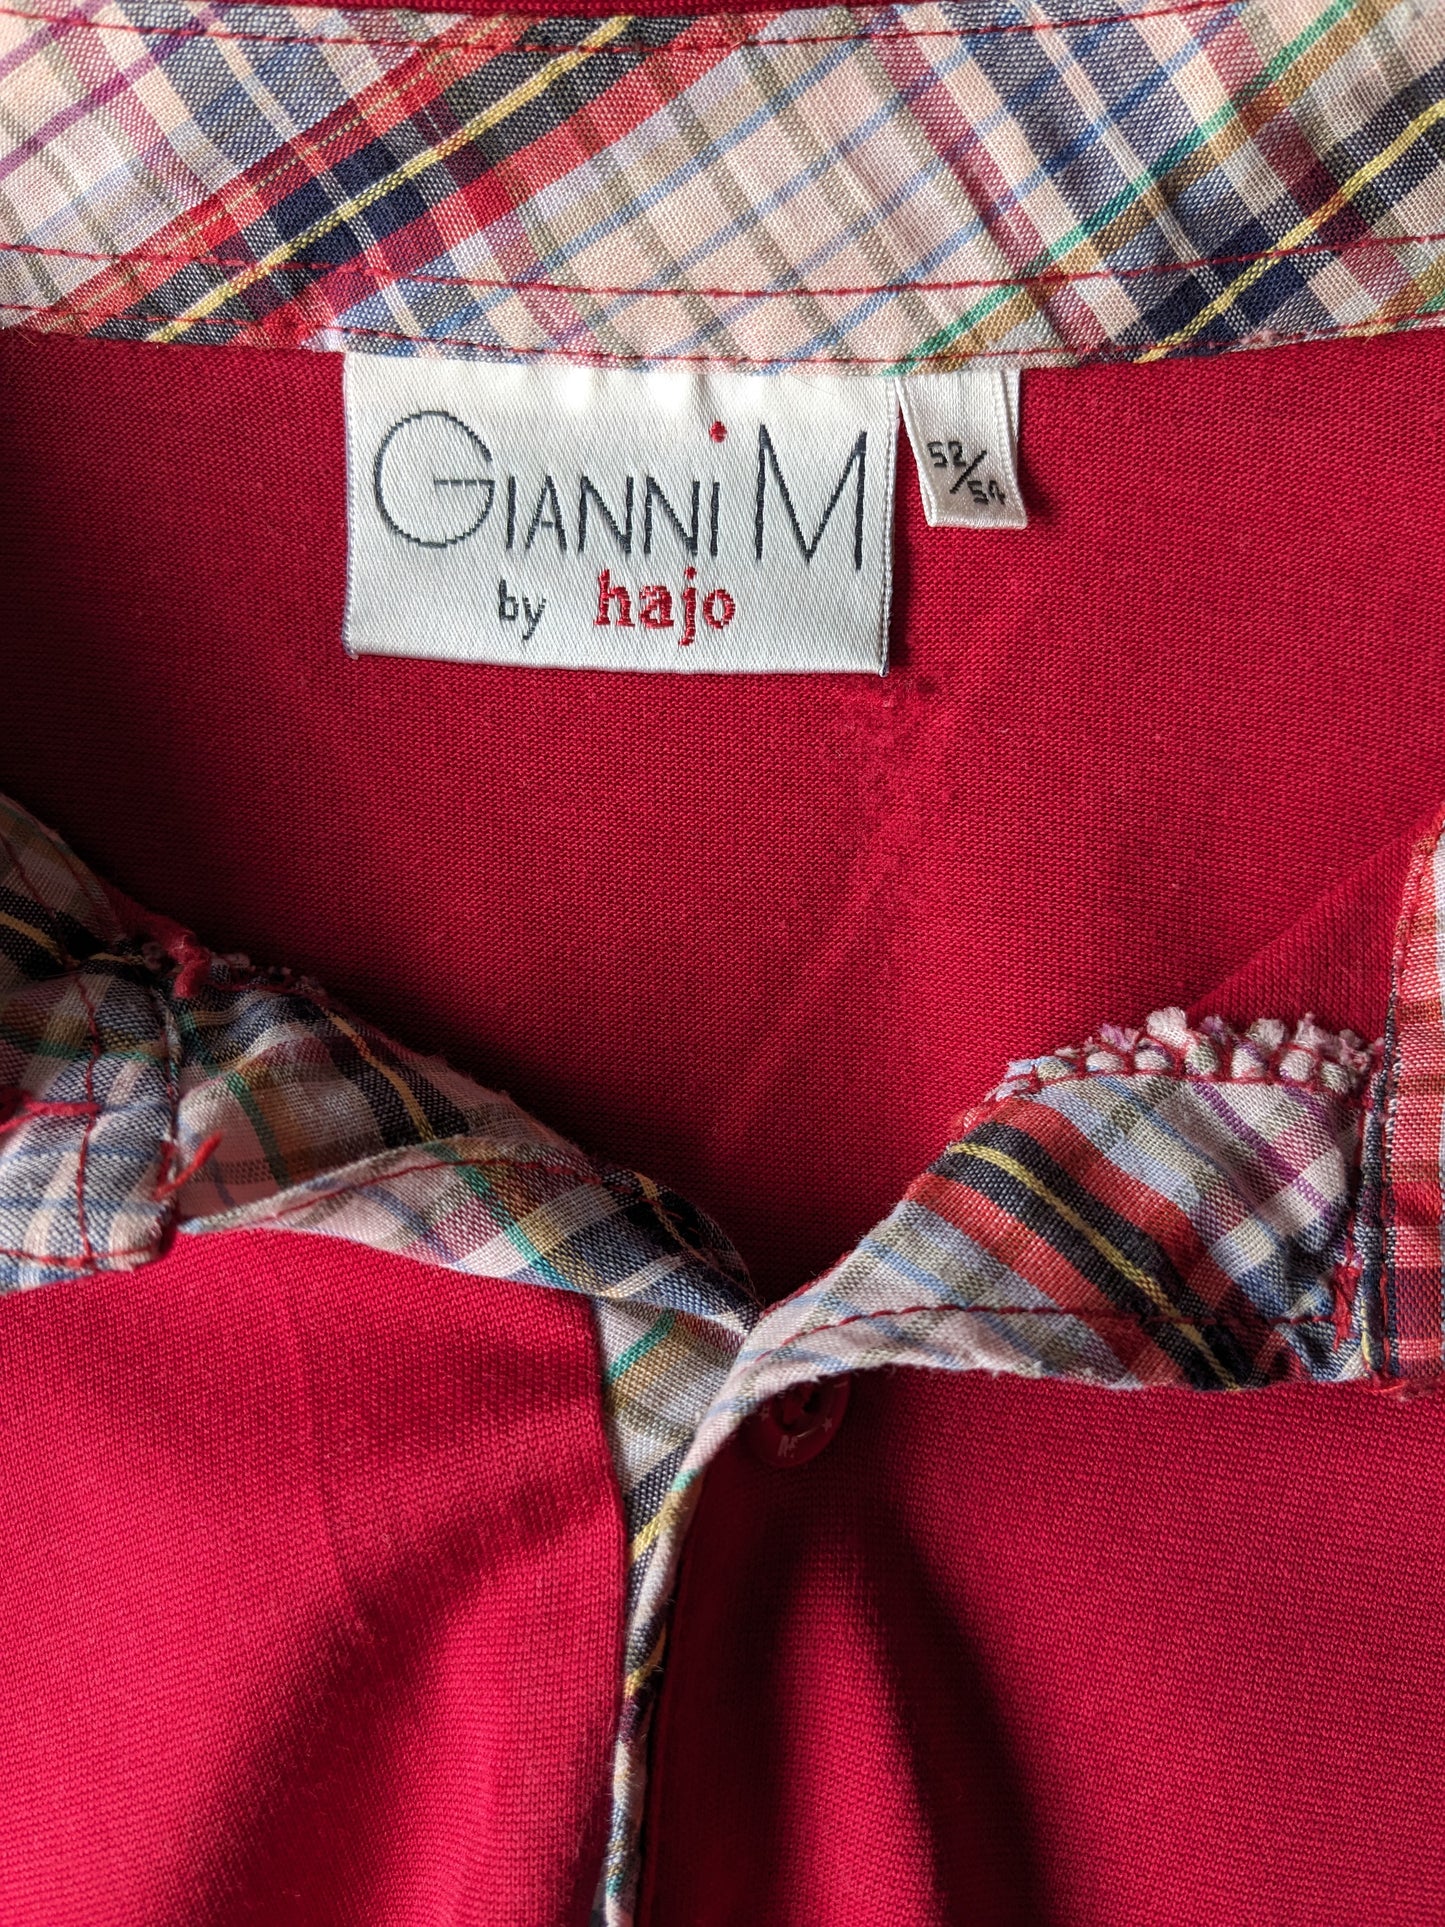 Gianni M par Hajo Vintage Polo avec bande élastique. Rouge coloré. Taille l / xl.